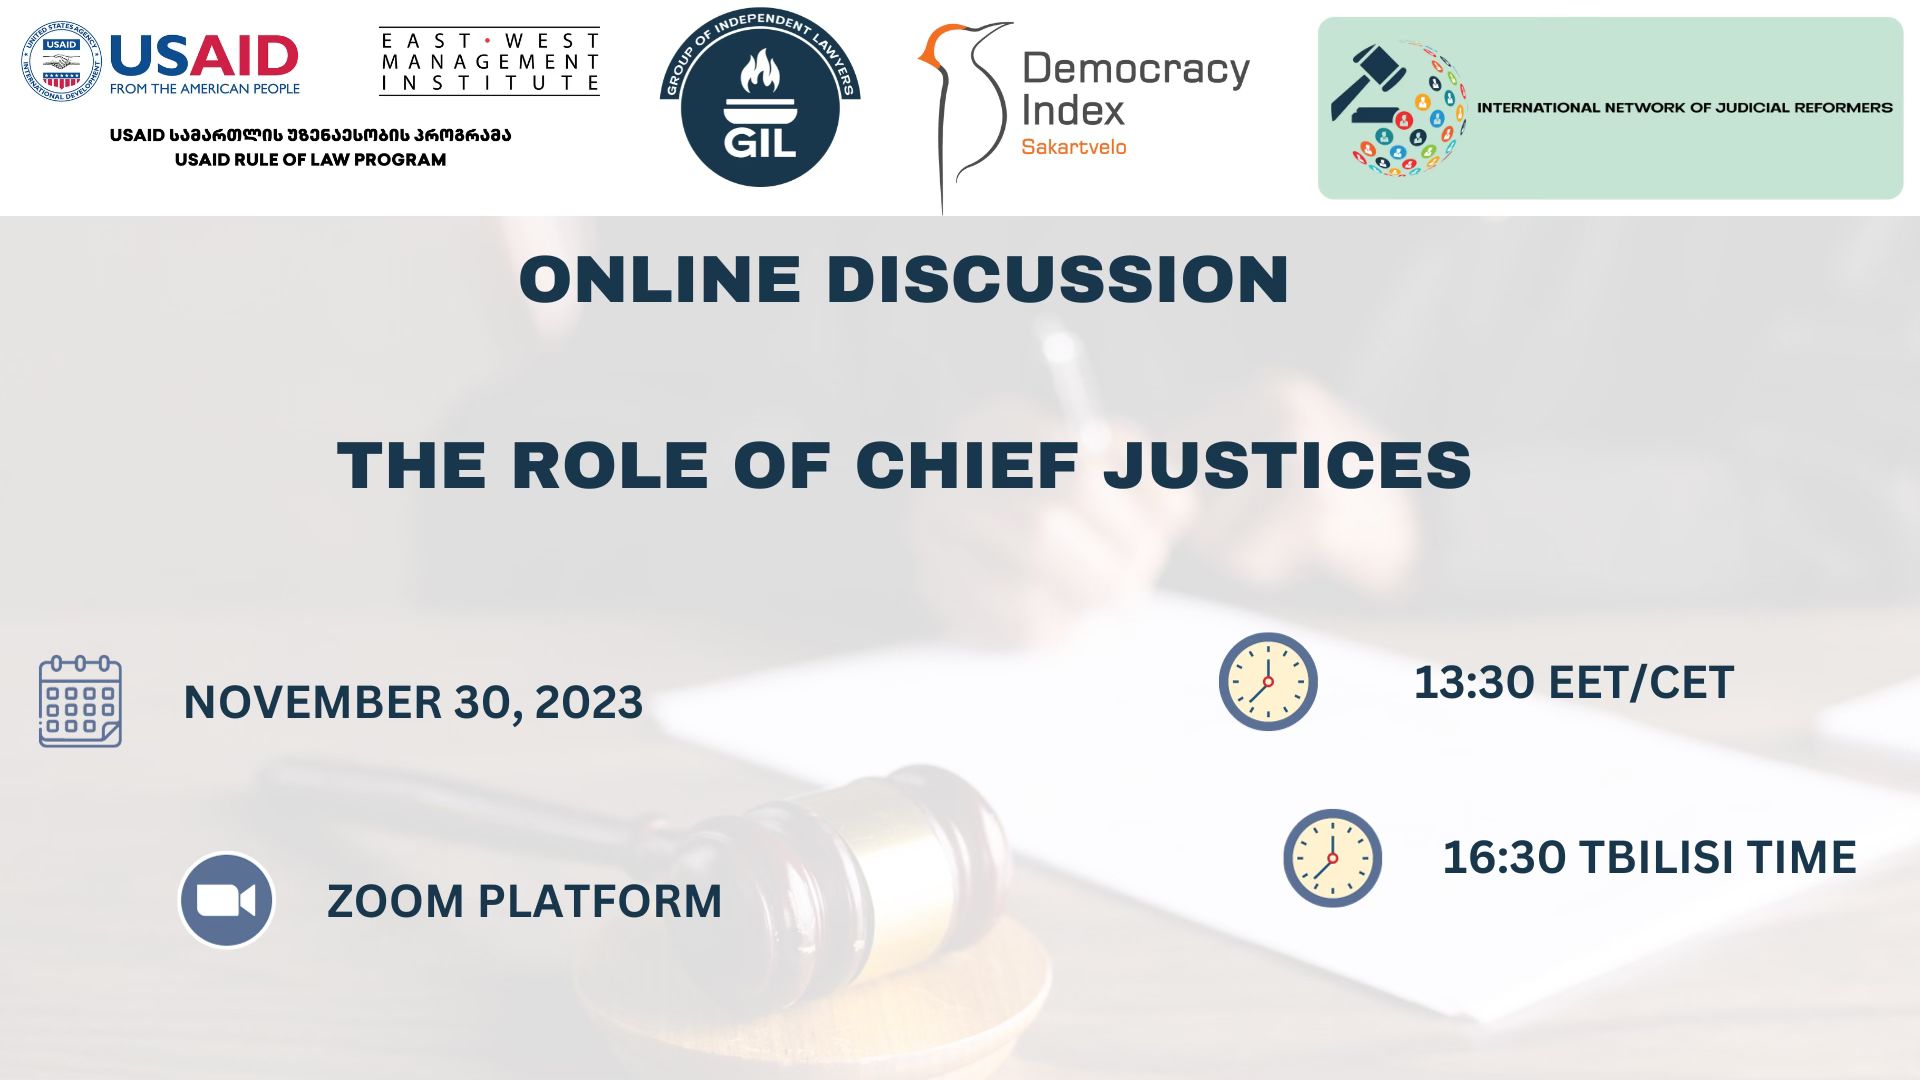 ონლაინ დისკუსია: “სასამართლოს თავმჯდომარეების როლი” / Online Discussion: The Role of Chief Justices